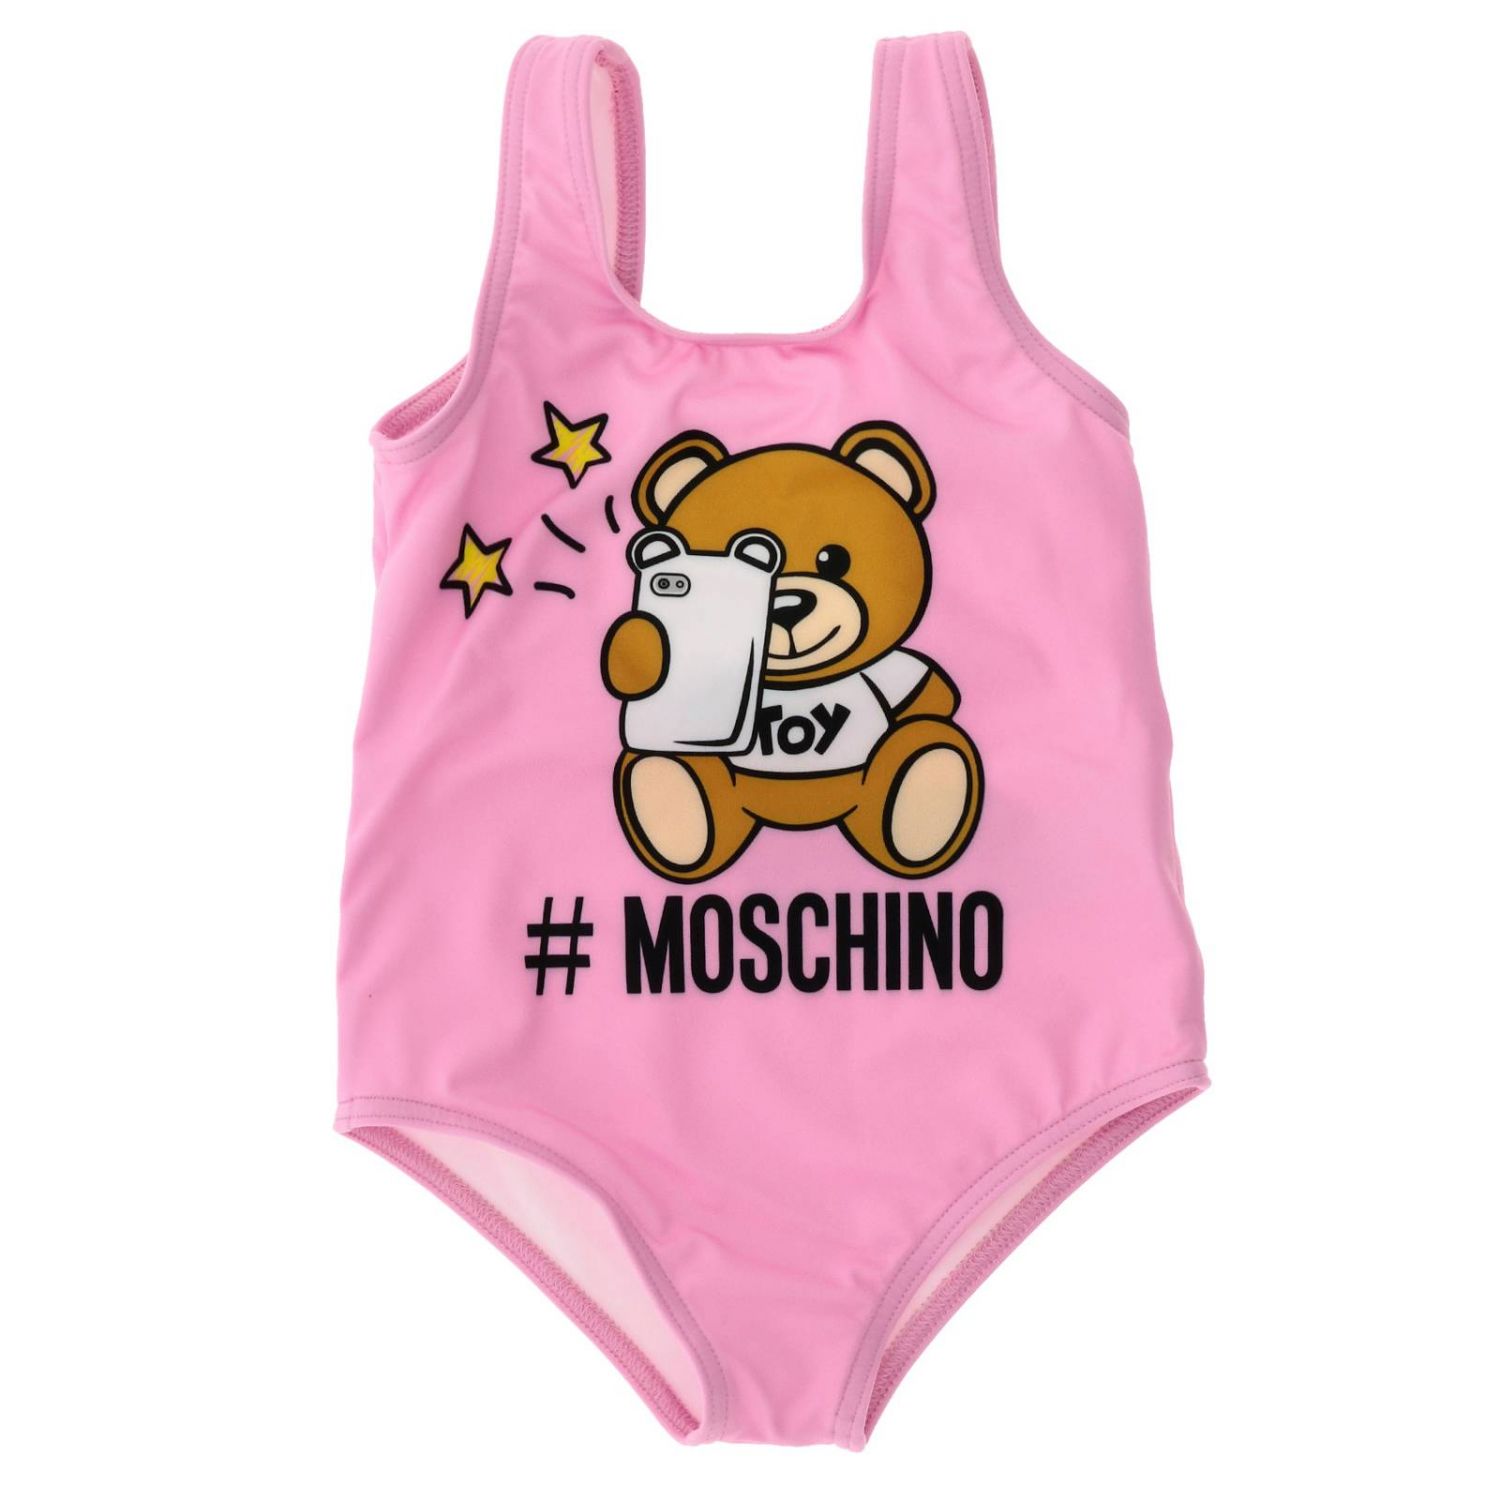 moschino baby swimsuit